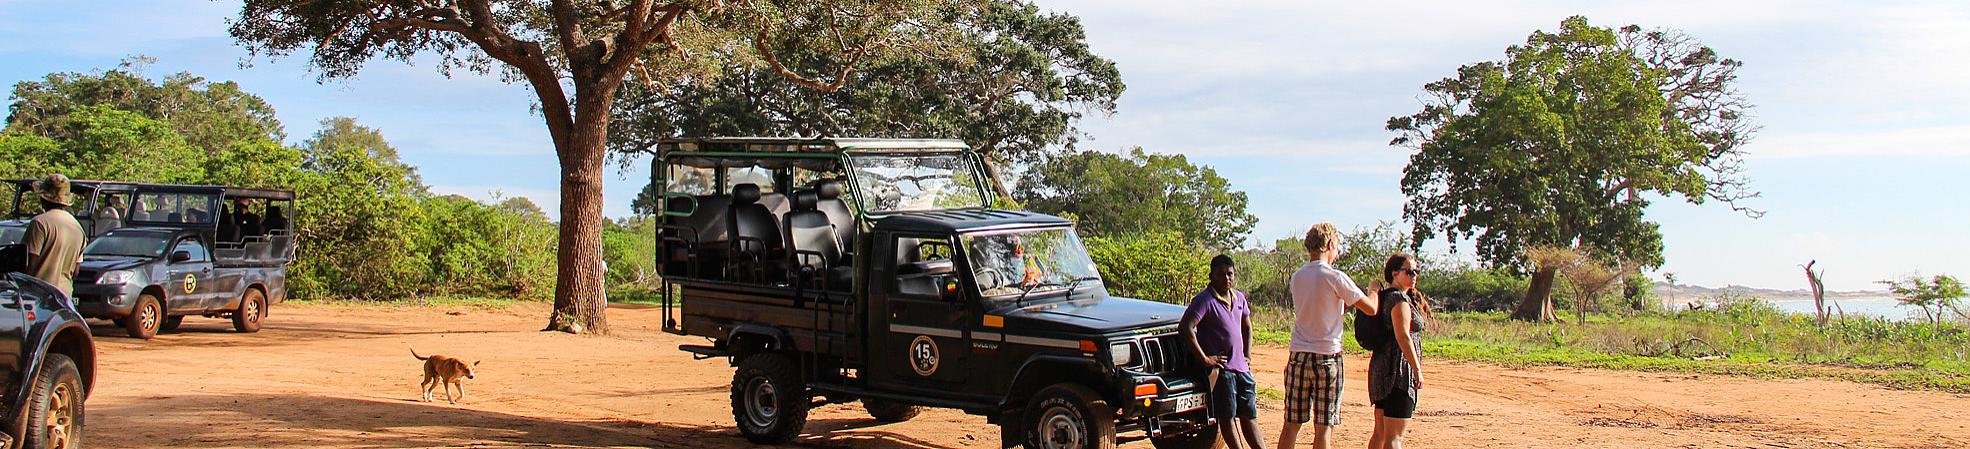 Jeep Safari in the Yala National Park, Sri Lanka